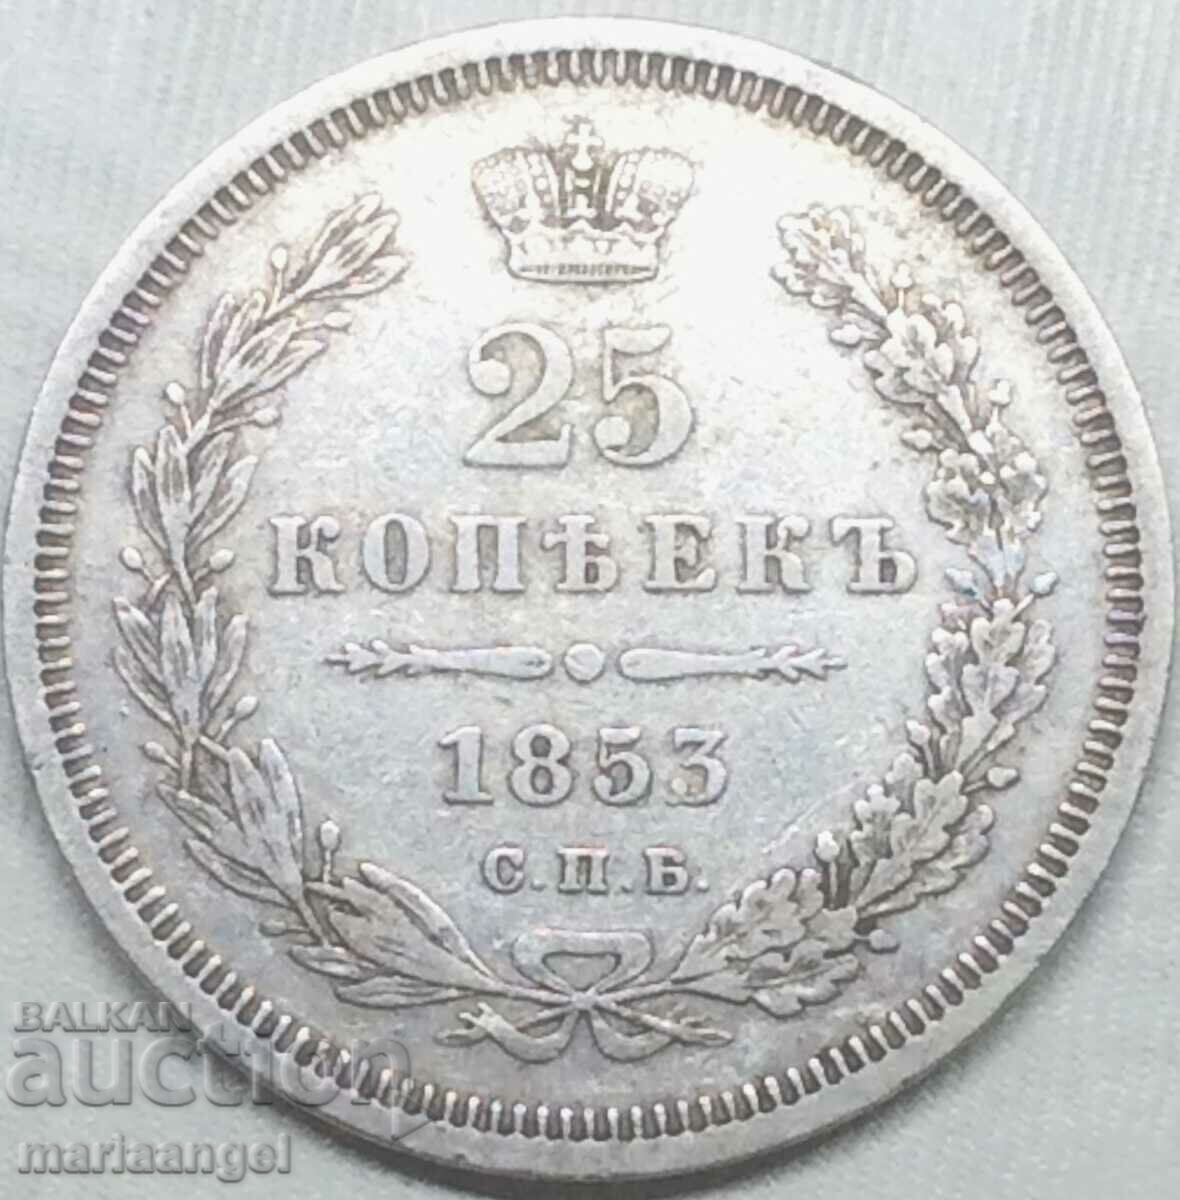 25 kopecks 1853 Russia silver - quite rare